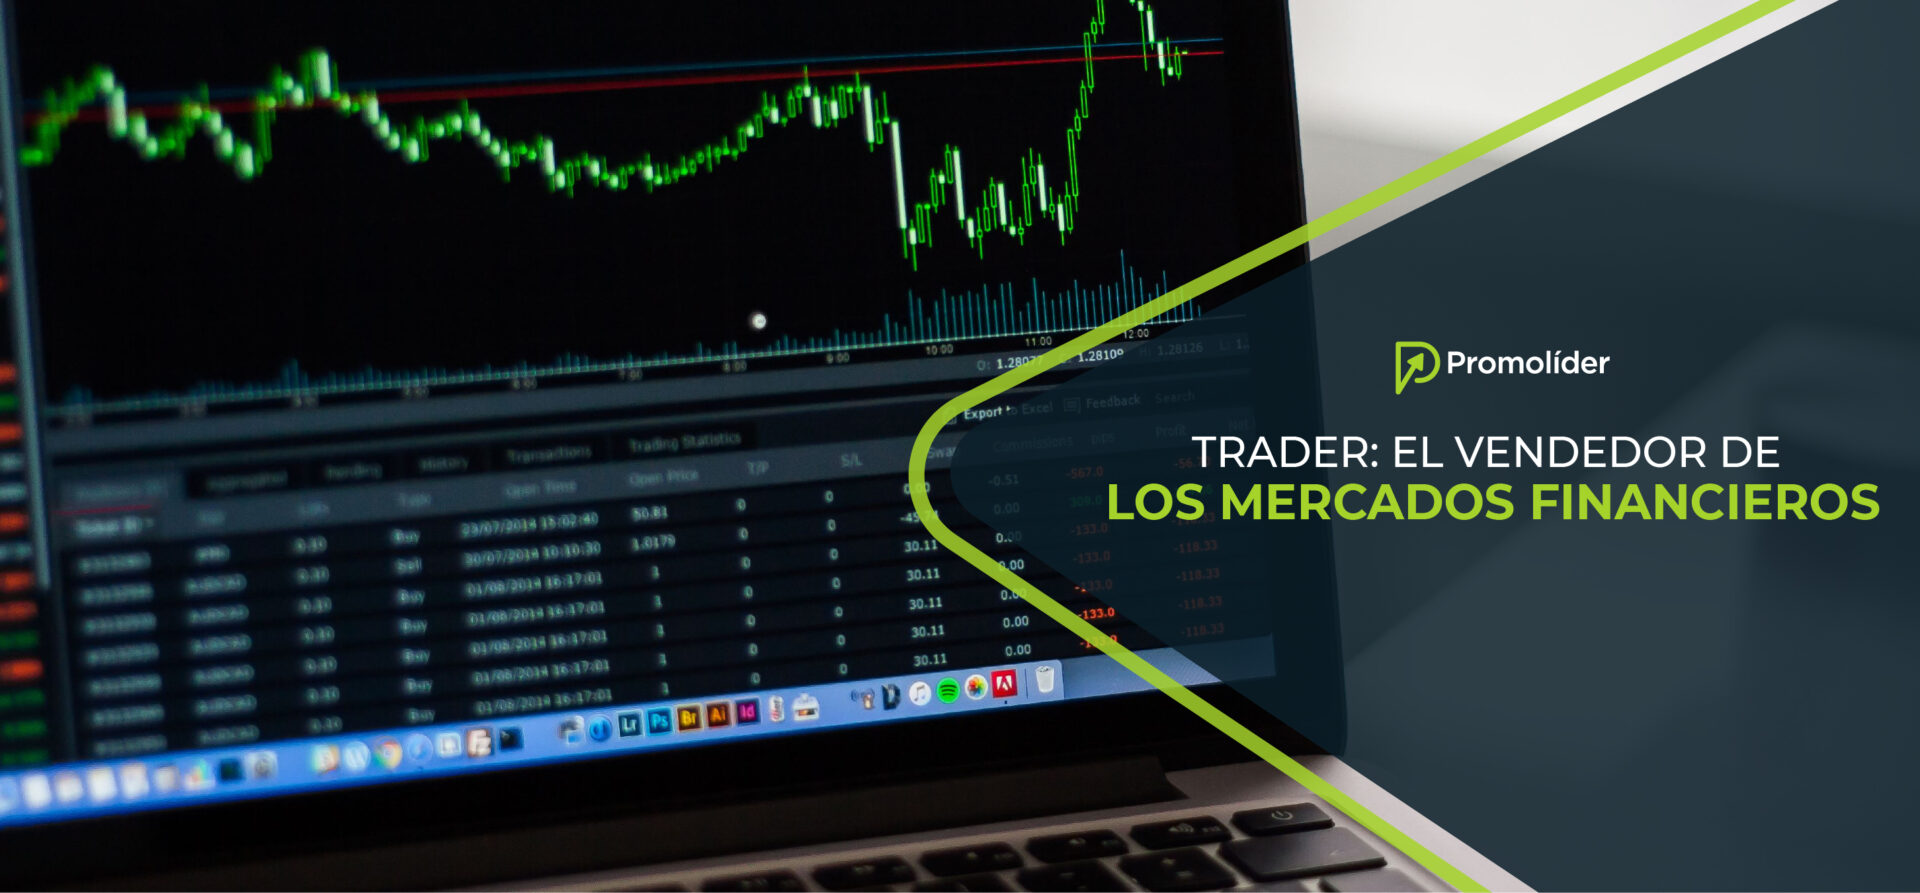 Trader: El vendedor de los mercados financieros